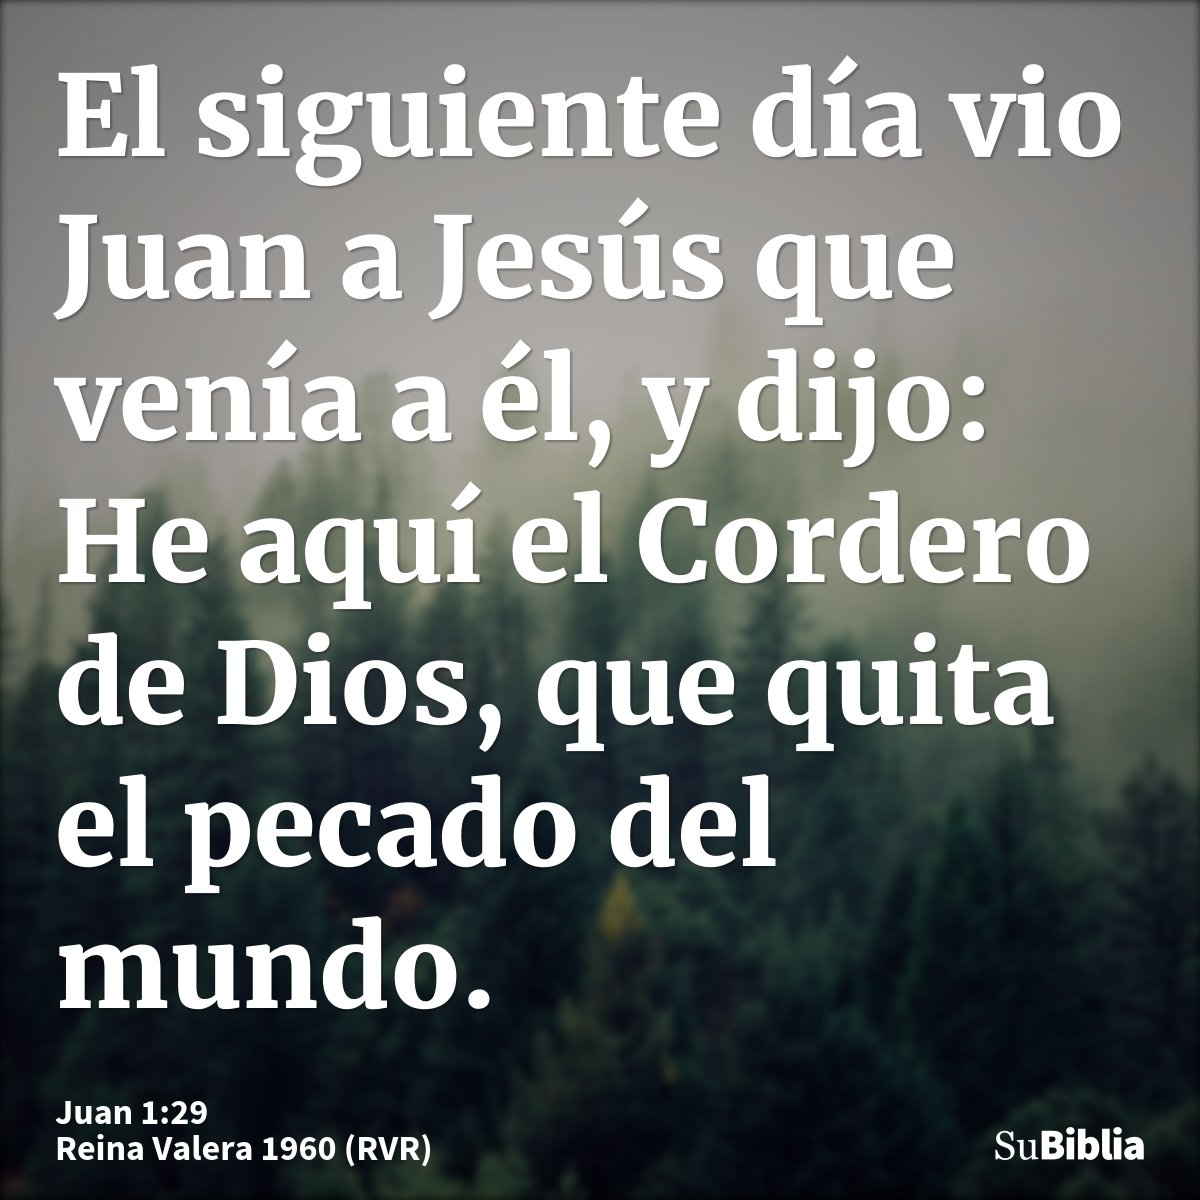 El siguiente día vio Juan a Jesús que venía a él, y dijo: He aquí el Cordero de Dios, que quita el pecado del mundo.